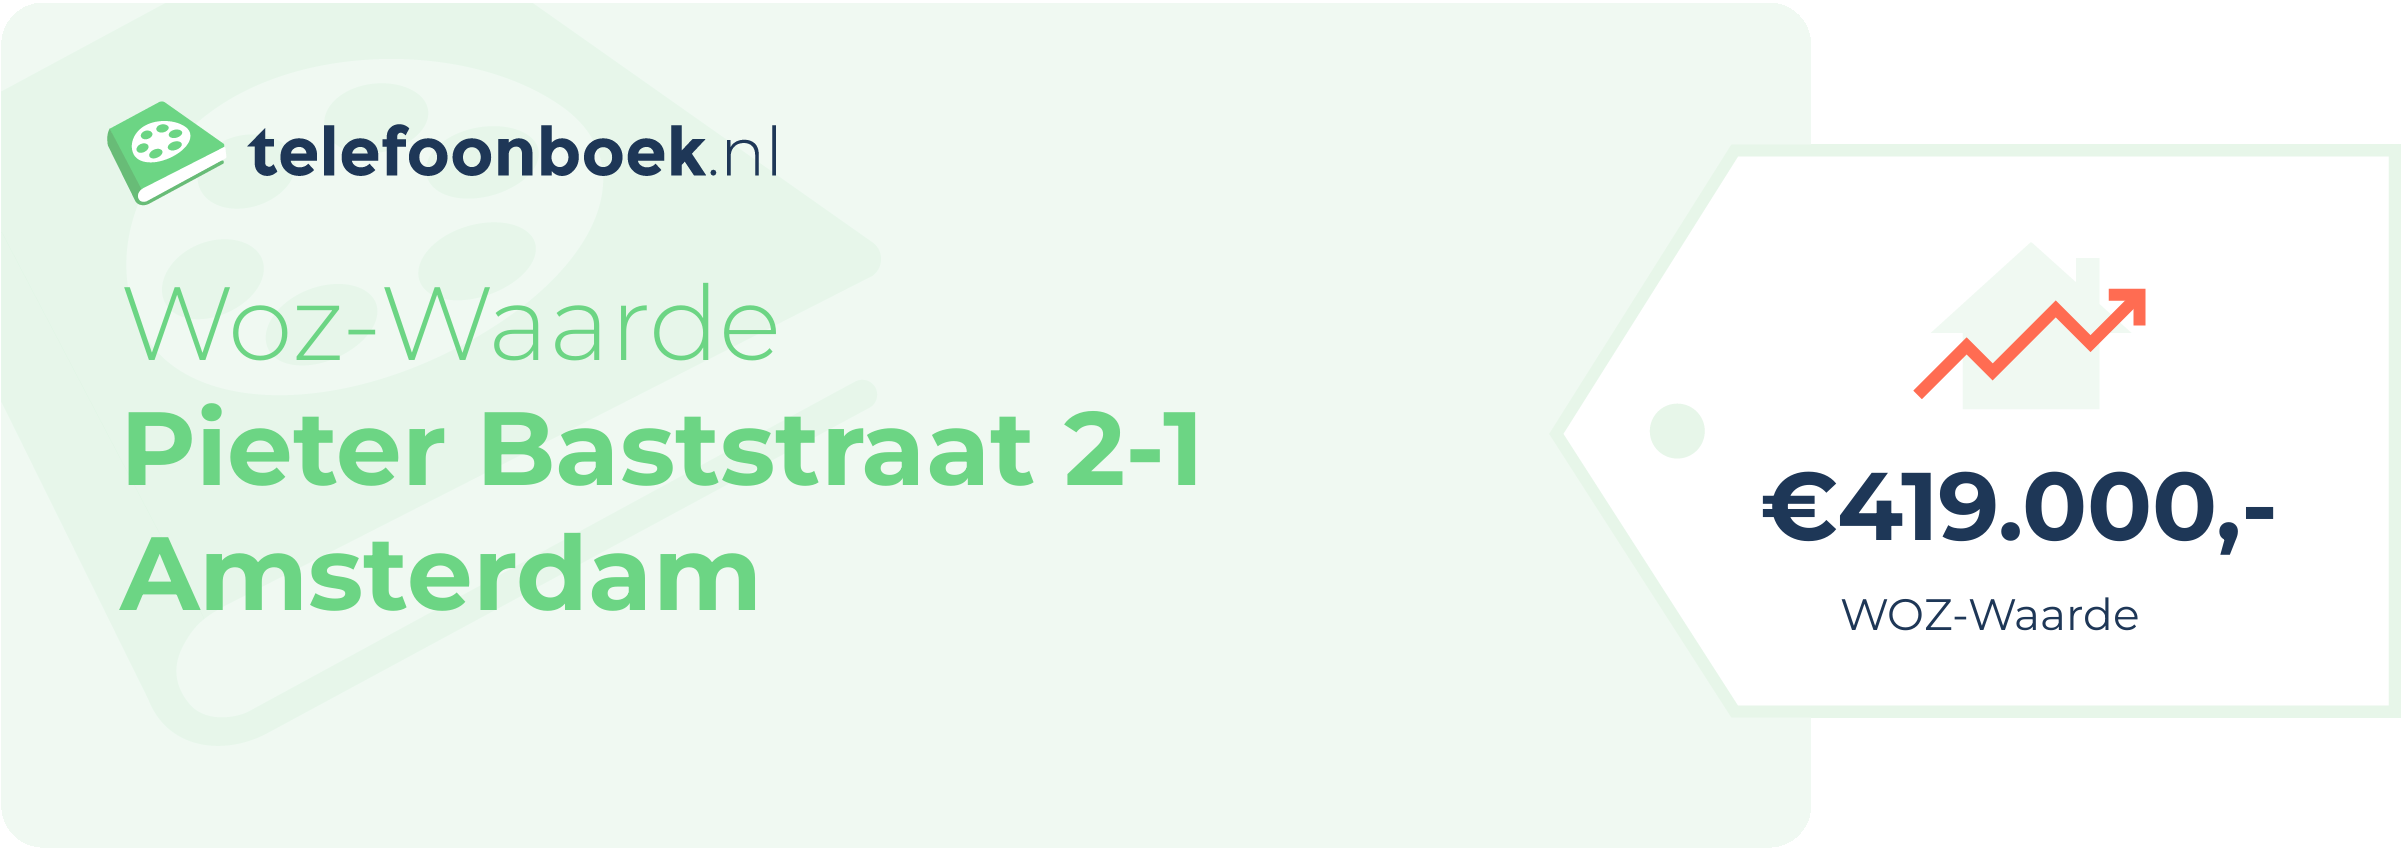 WOZ-waarde Pieter Baststraat 2-1 Amsterdam